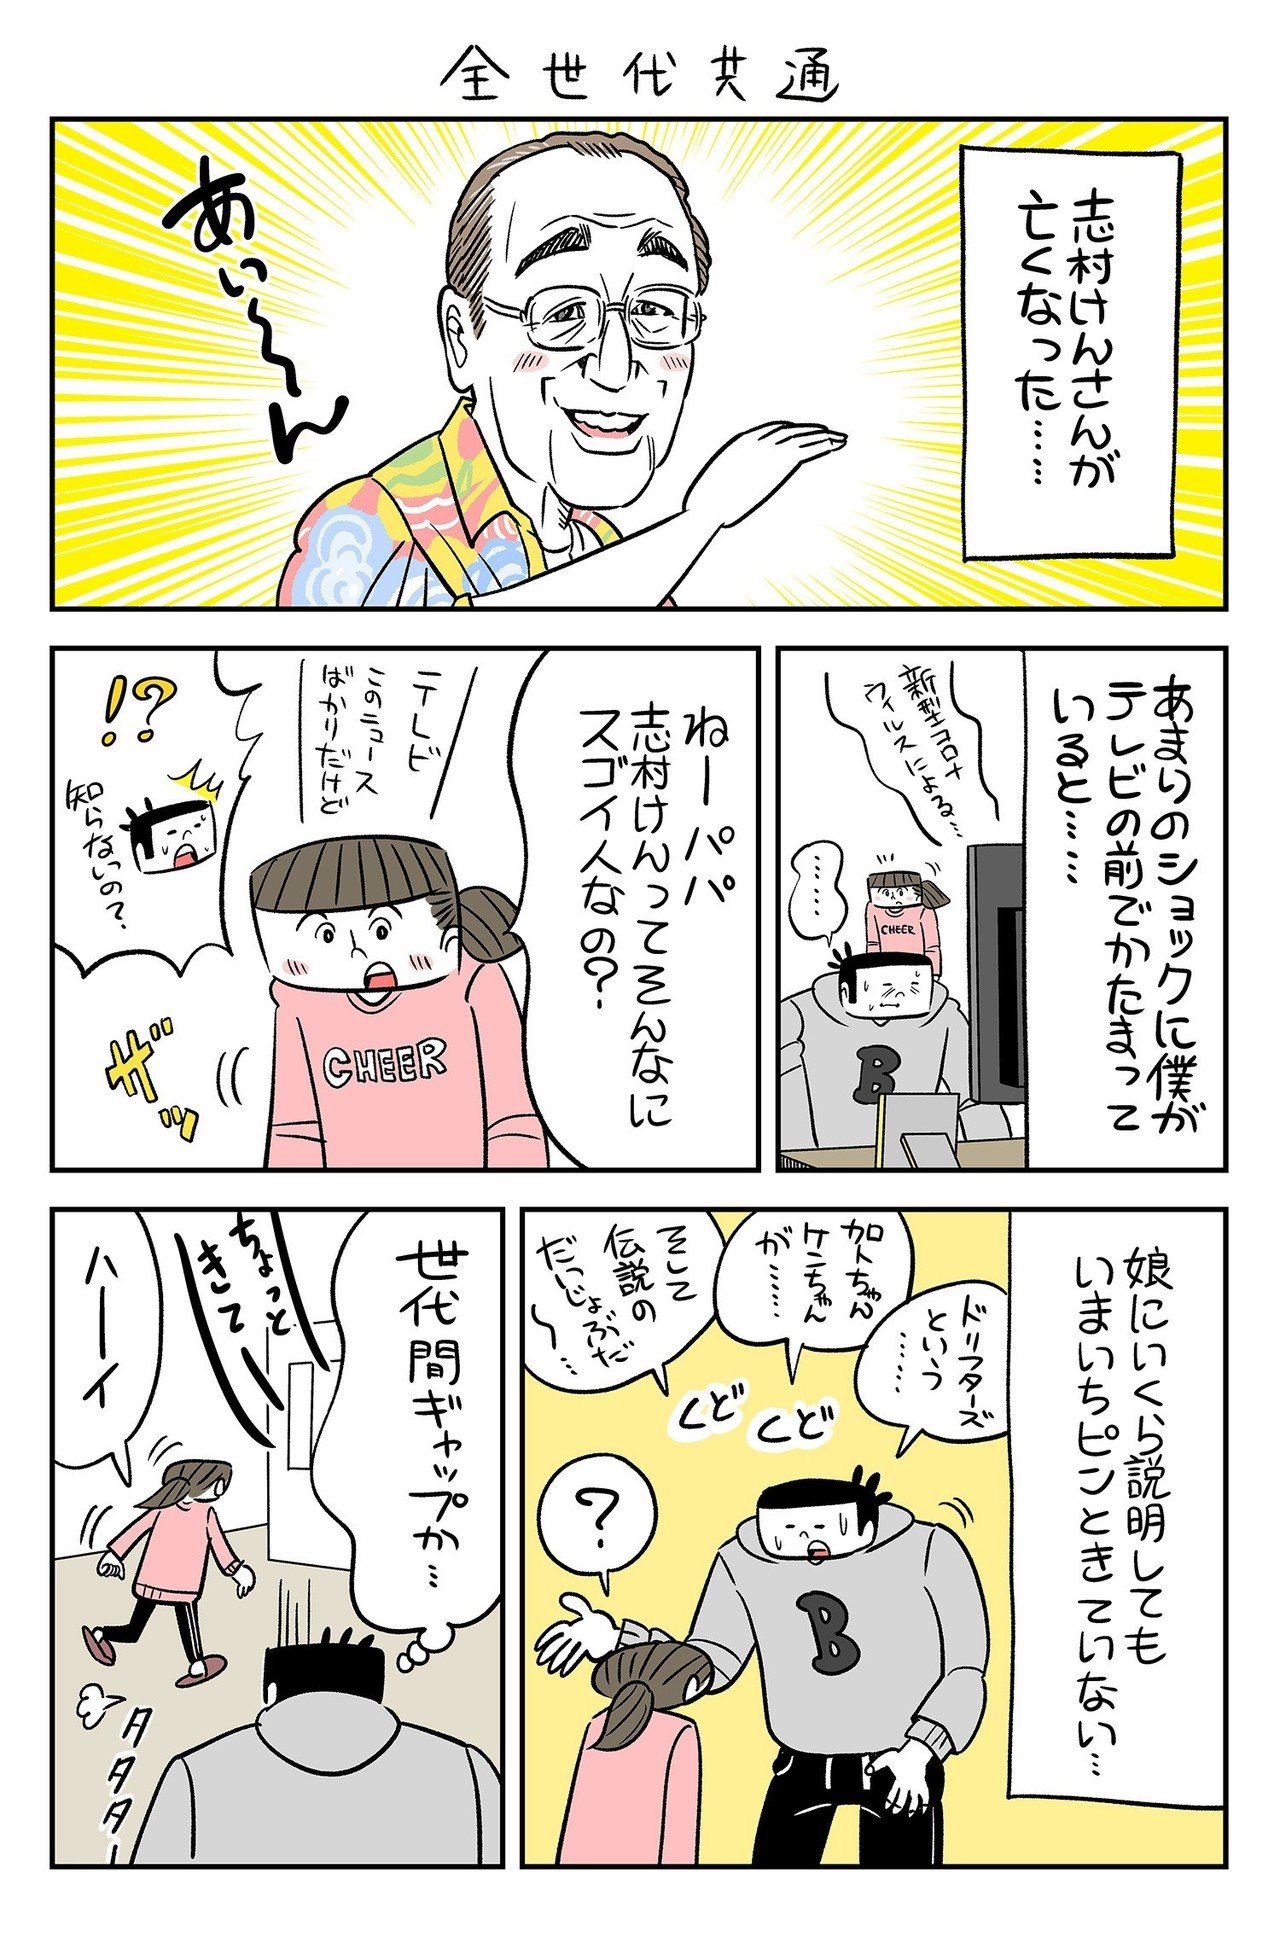 漫週記 あるイラストレーター 漫画家の日常 年1月 3月まとめ 奈良裕己 ボマンガ Note